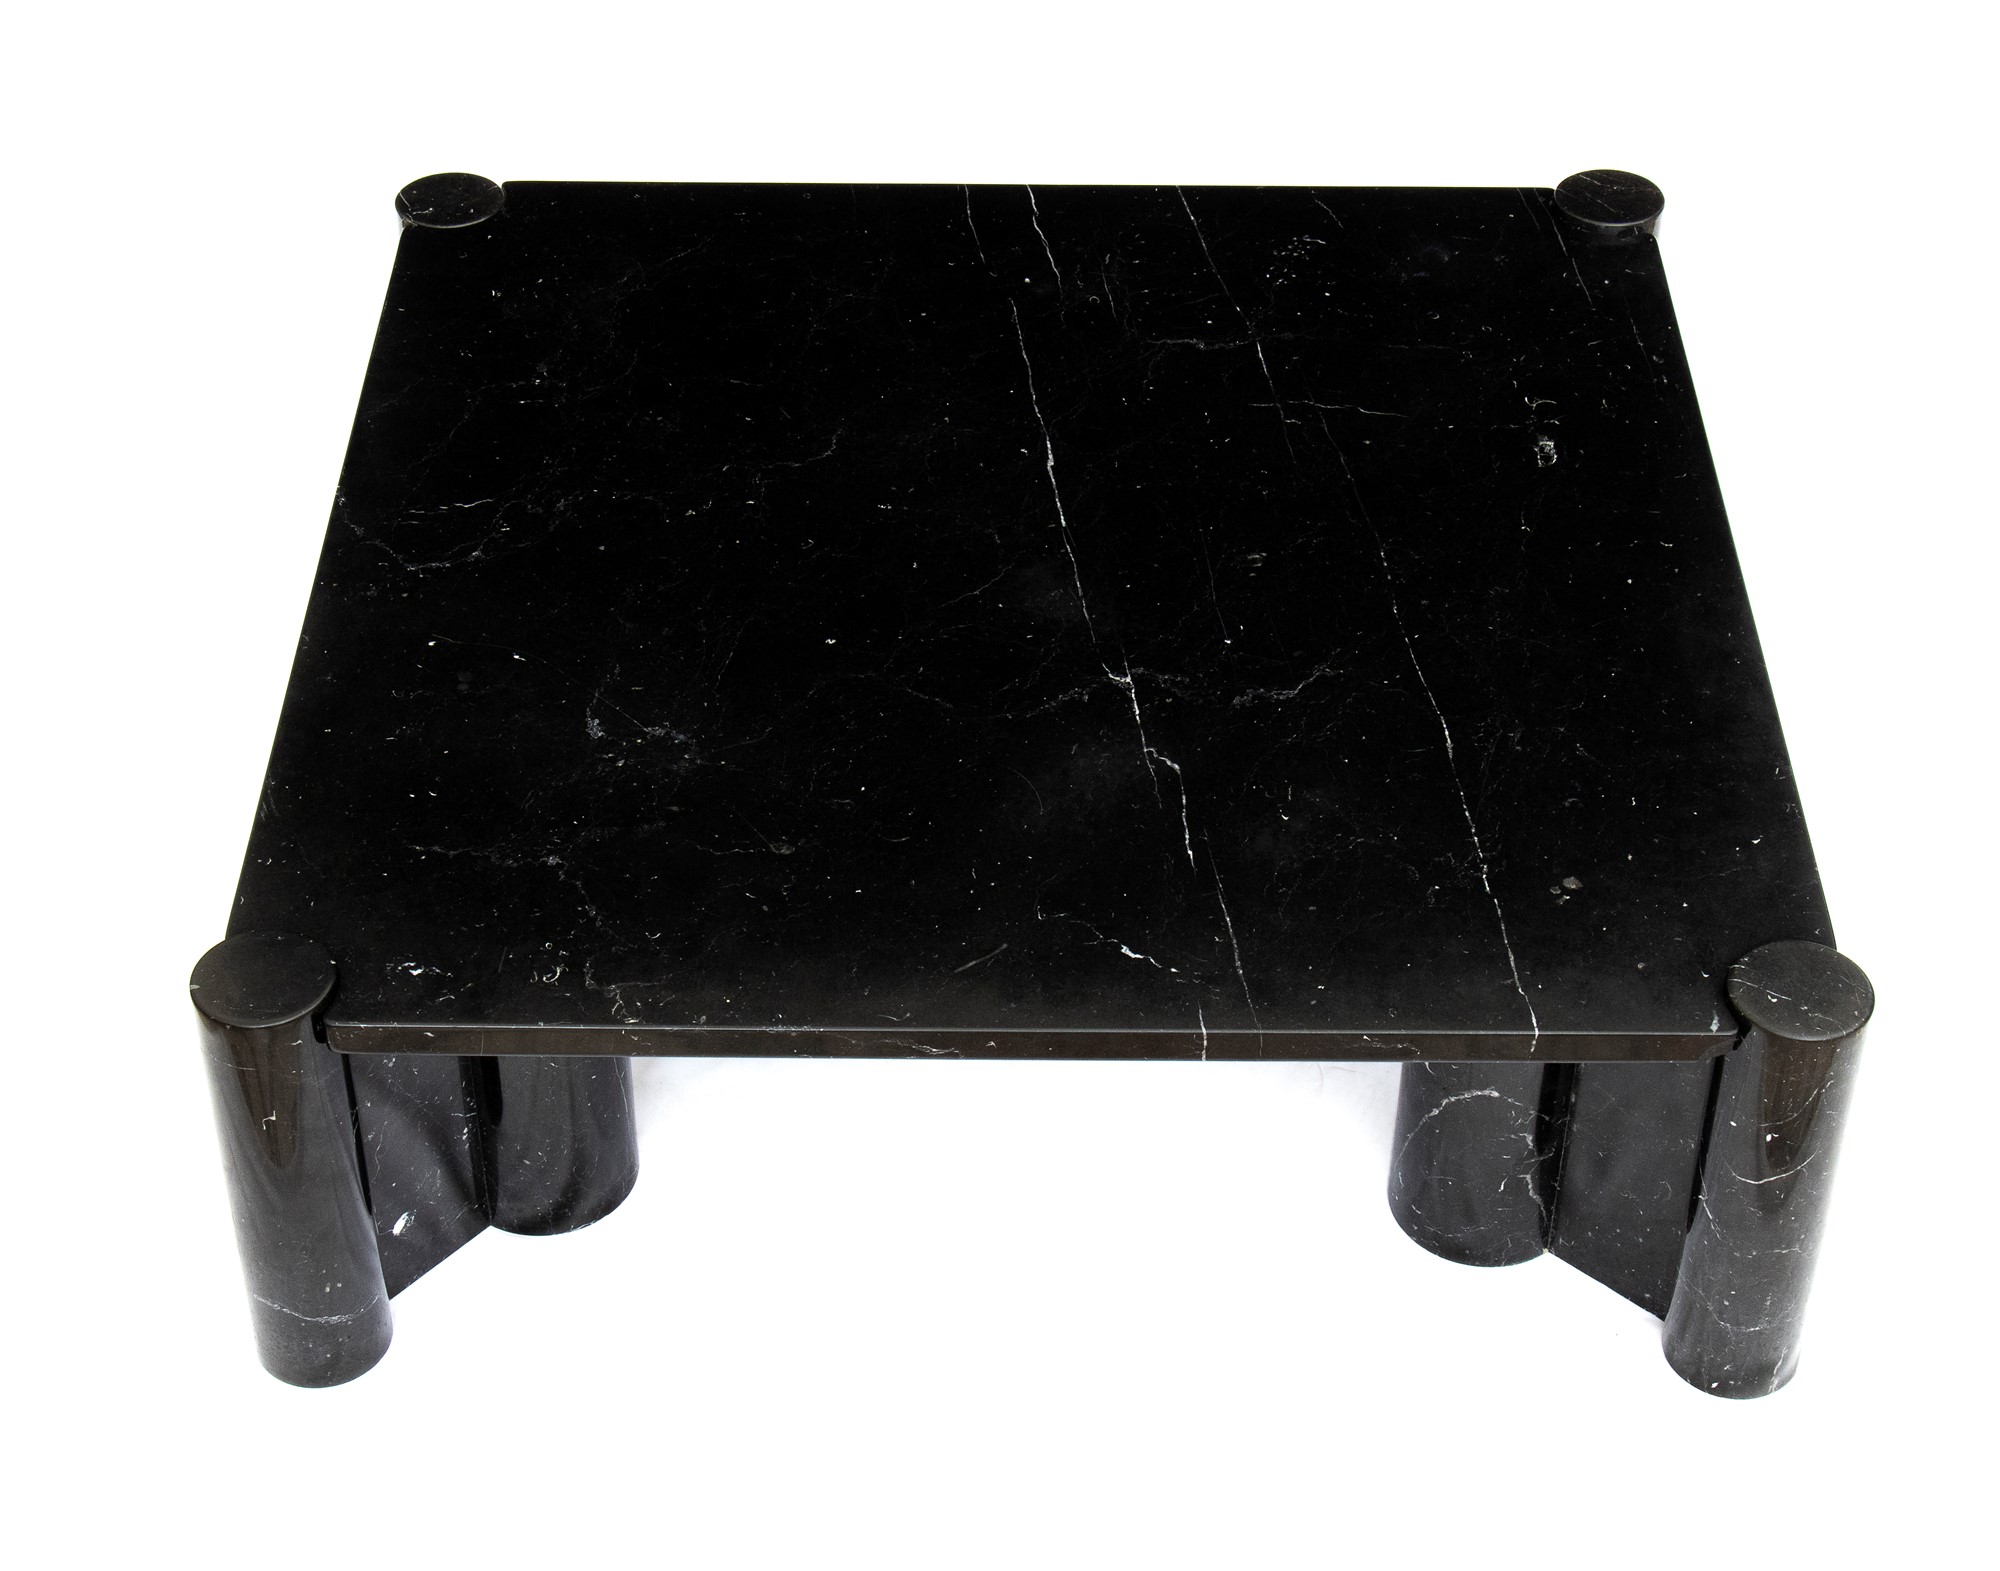 Gae Aulenti Palazzolo dello Stella 1927-Milano 2012 Living room table in black marble marquinia mod - Image 5 of 23